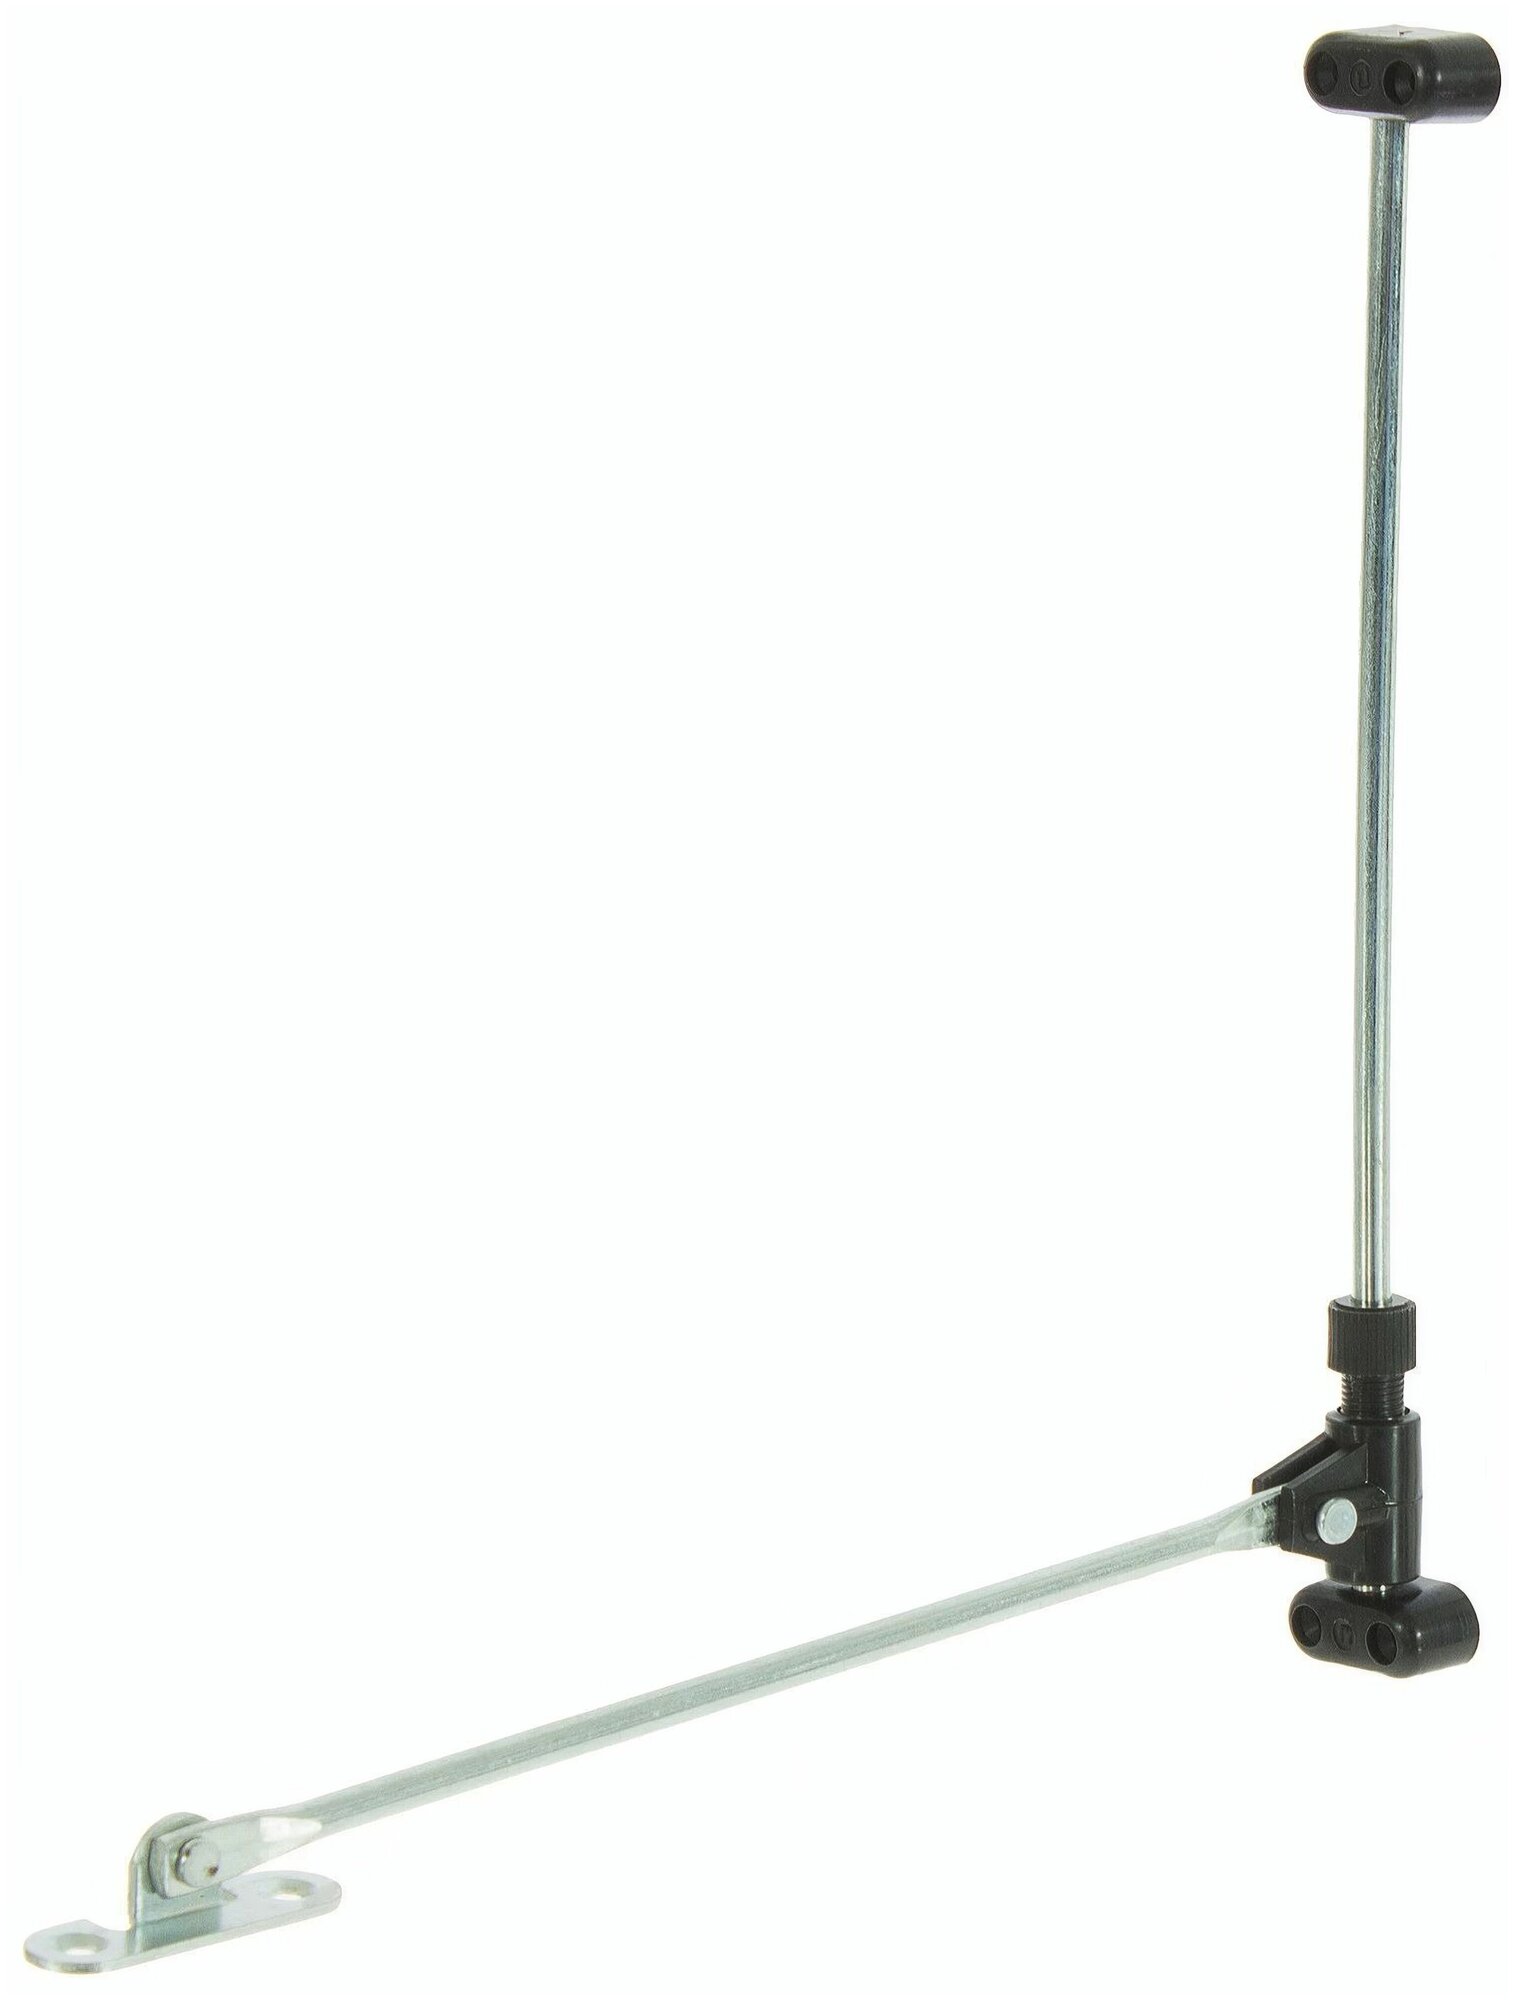 Откидной кронштейн (серии 168-00) нагрузка до 3кг, длина хода 200мм - для фиксации полок и дверец шкафчиков, секретеров и баров, сталь, самоторможение